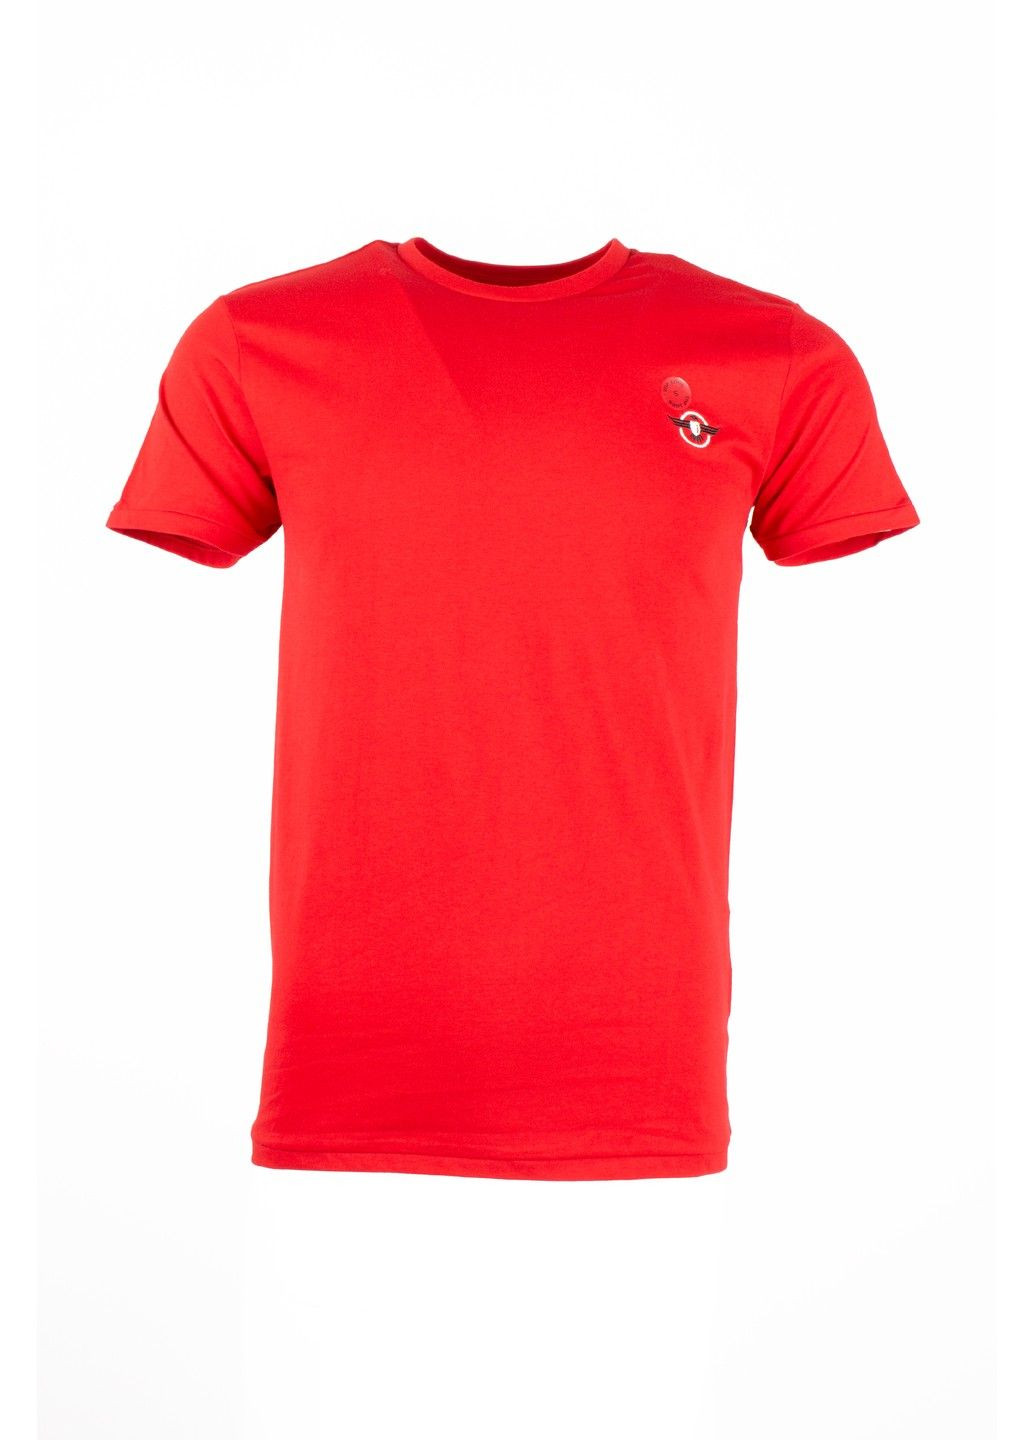 Красная футболка мужская top look красная 070821-001527 No Brand